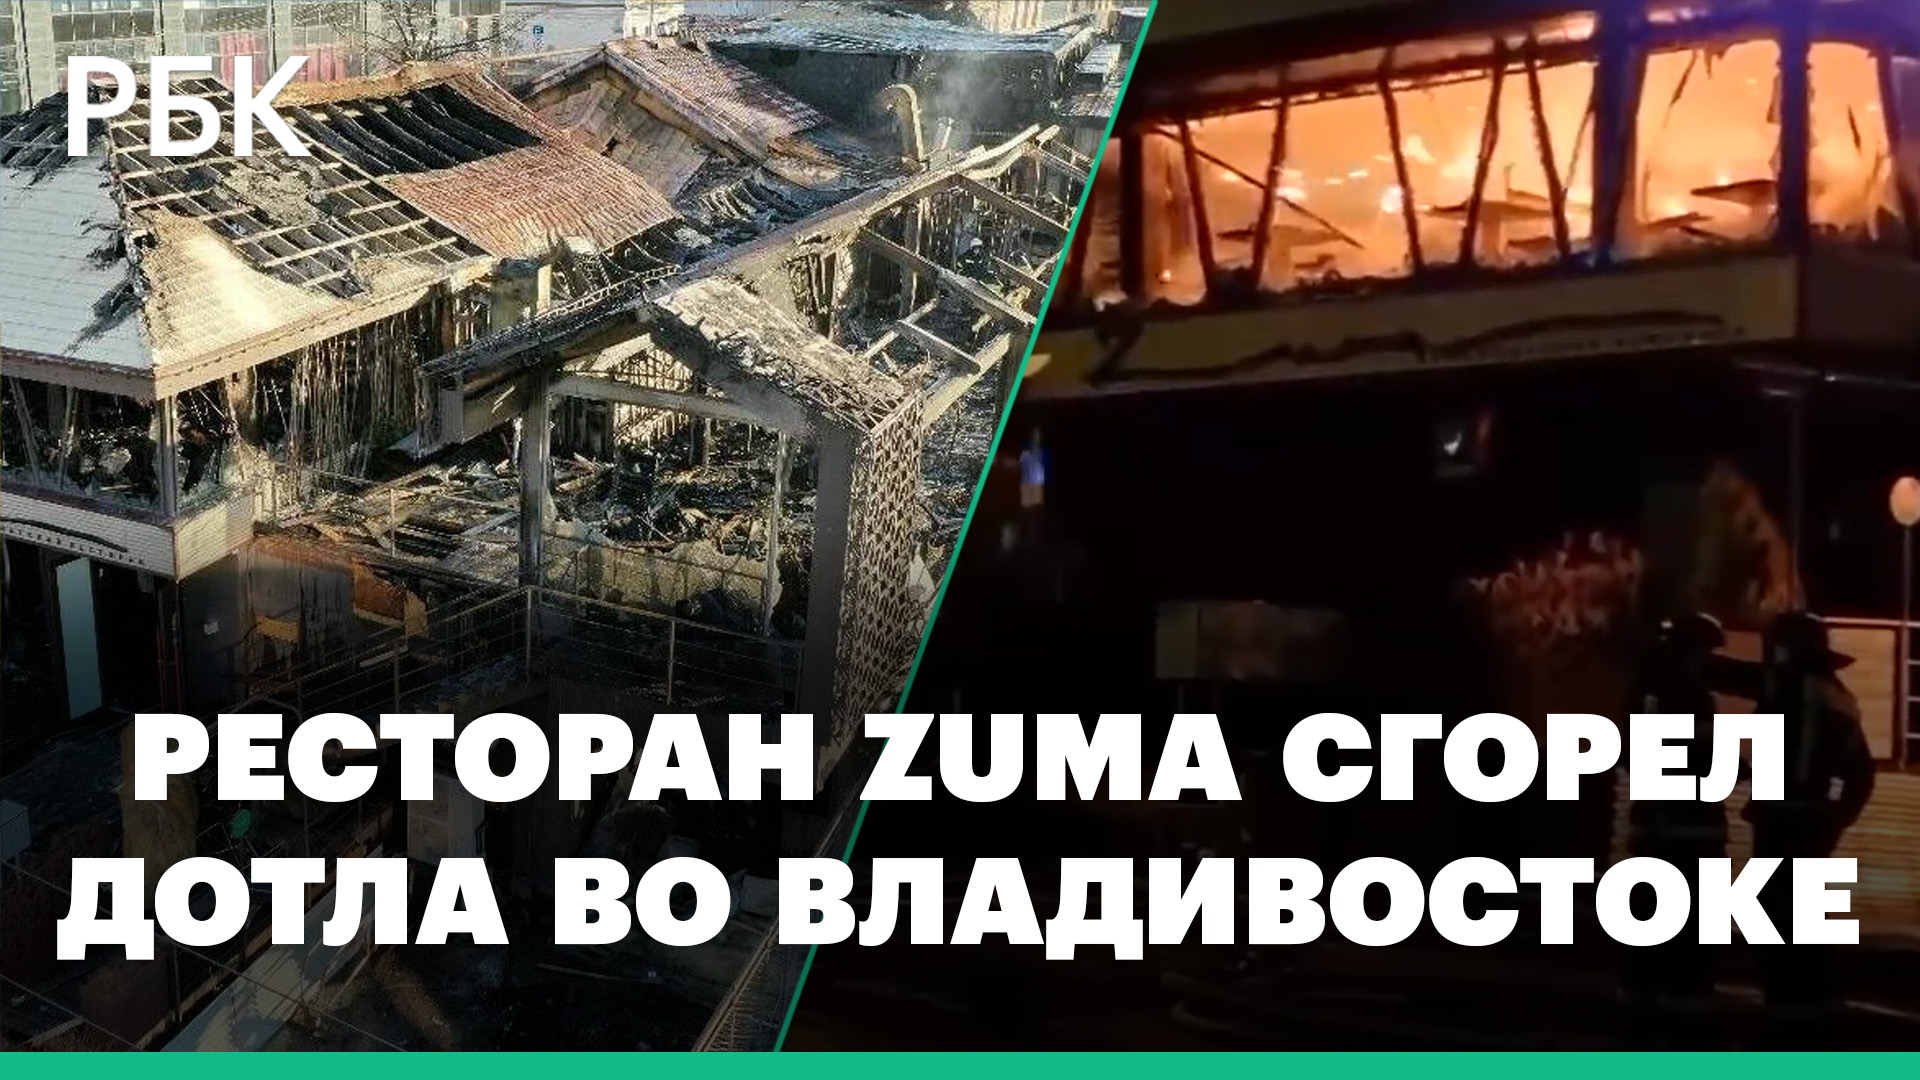 Ресторан Zuma сгорел дотла во Владивостоке